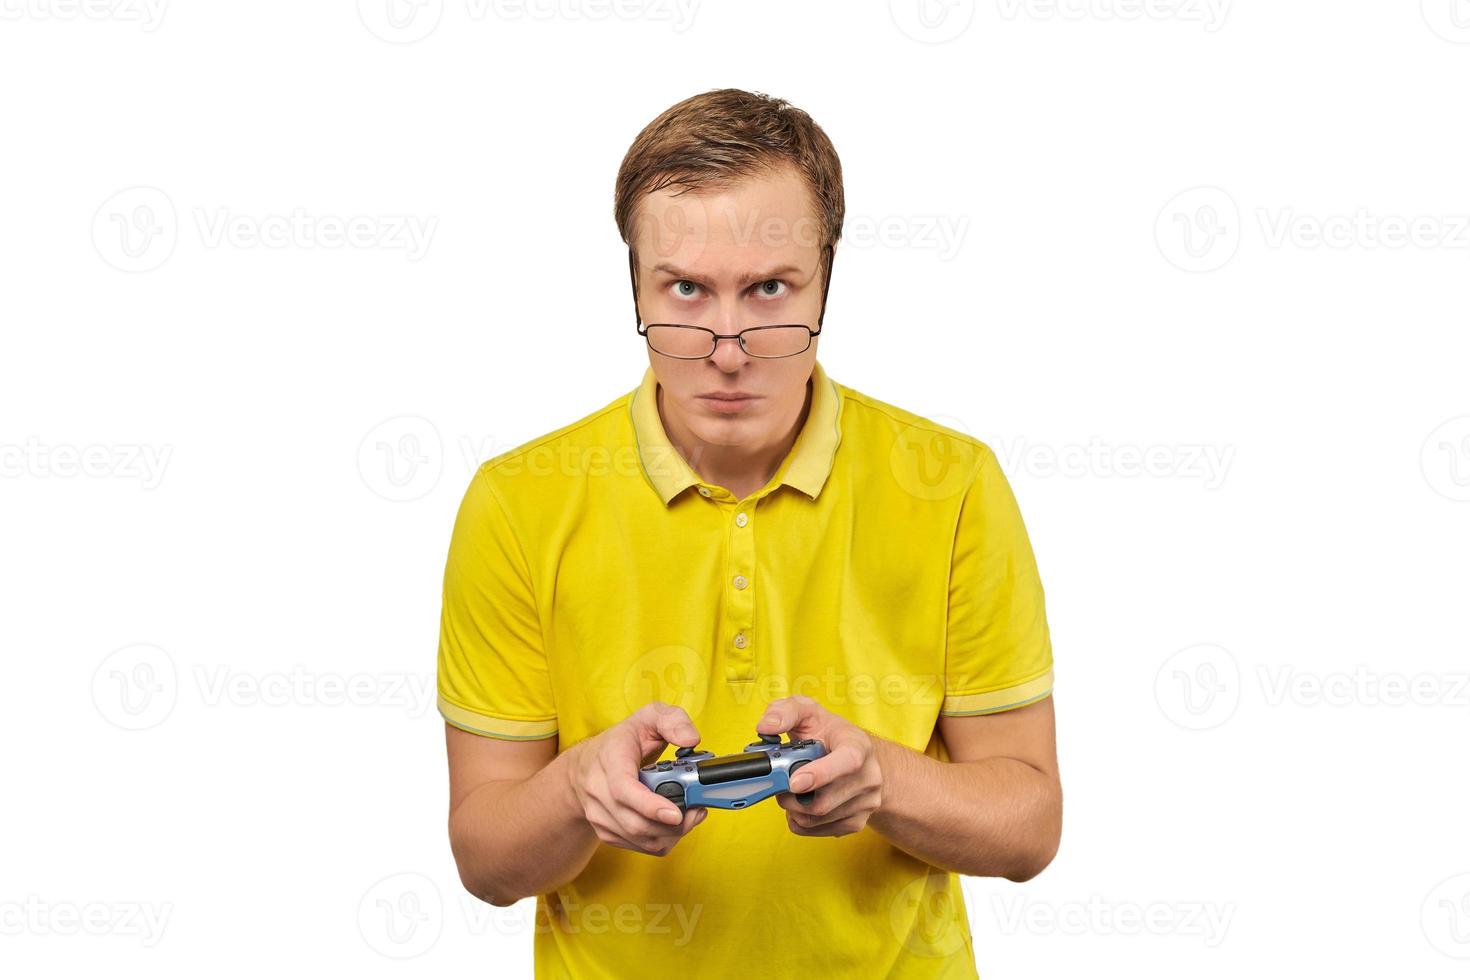 joueur geek à lunettes et t-shirt jaune avec manette de jeu, joueur de jeu vidéo excité isolé sur blanc photo